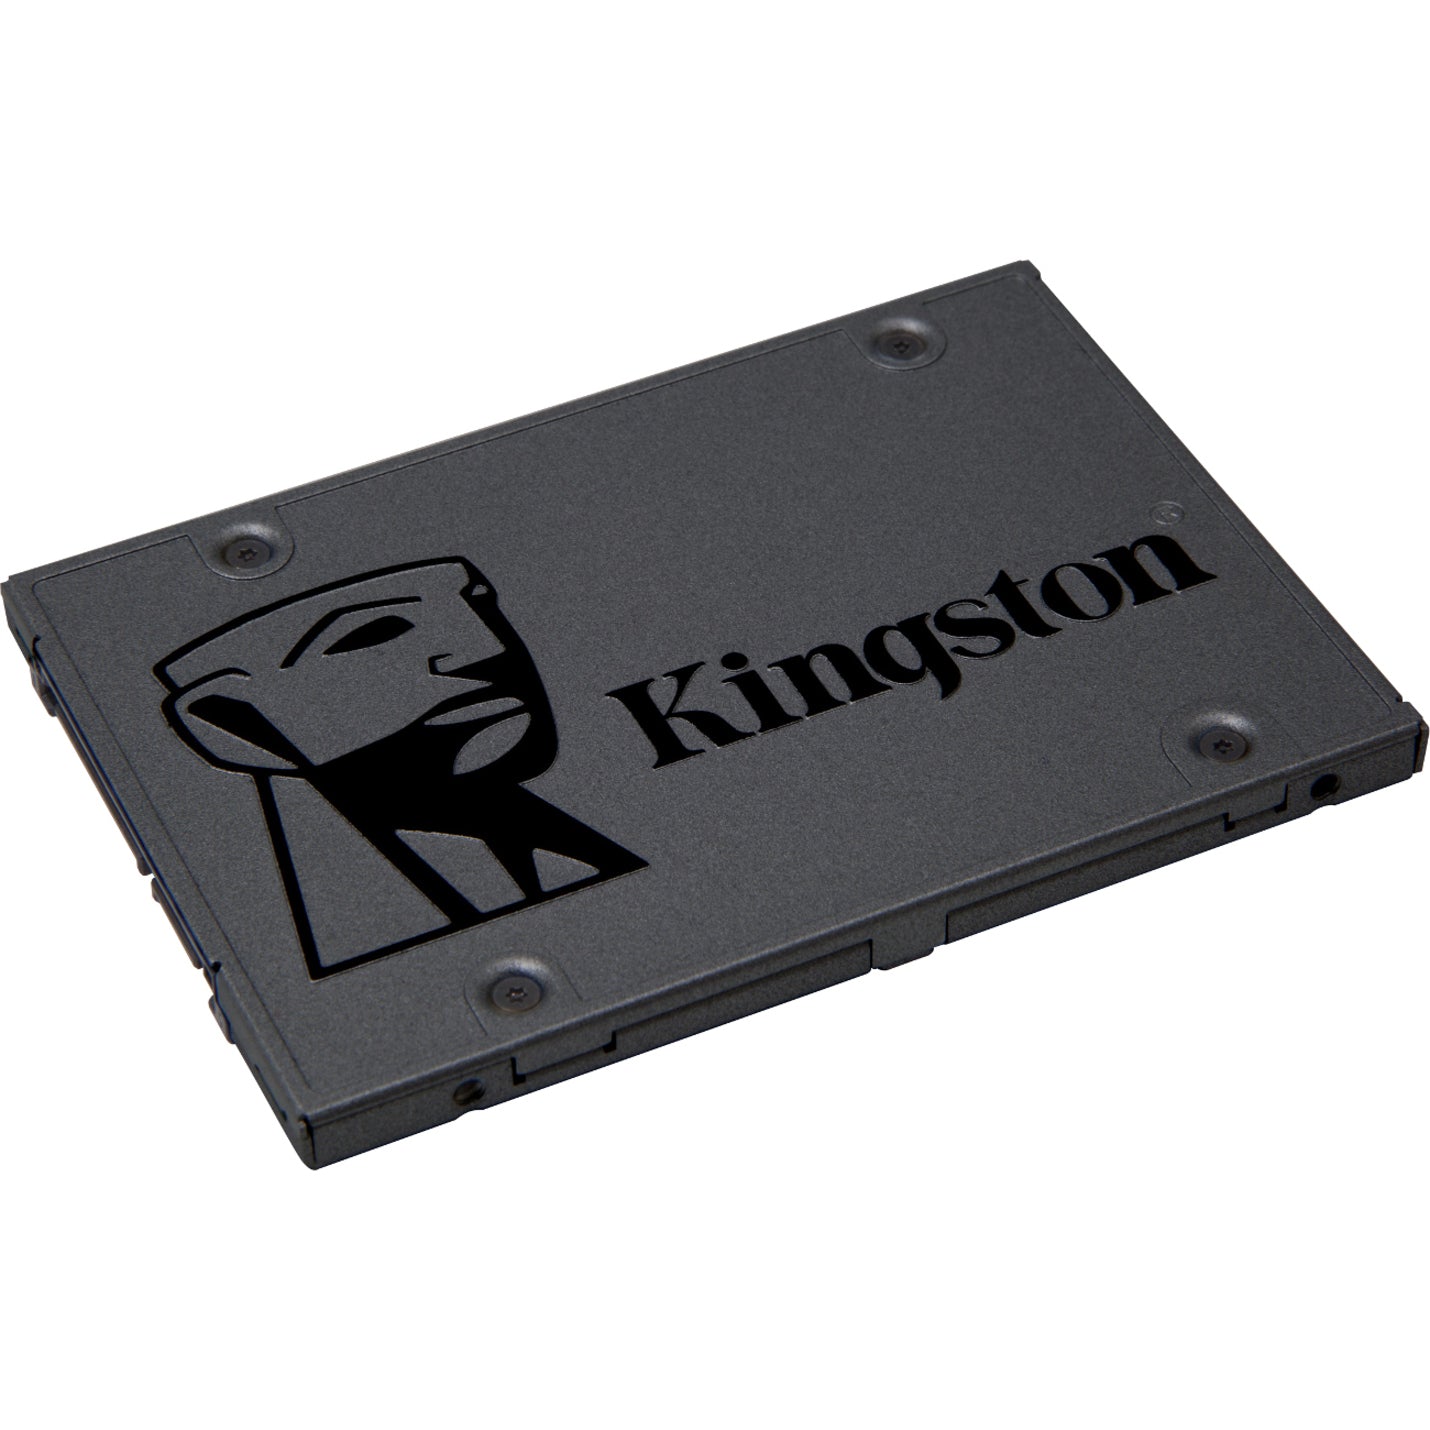 Kingston Q500 960 GB Solid State Drive - 2.5" Internal - SATA (SATA/600)